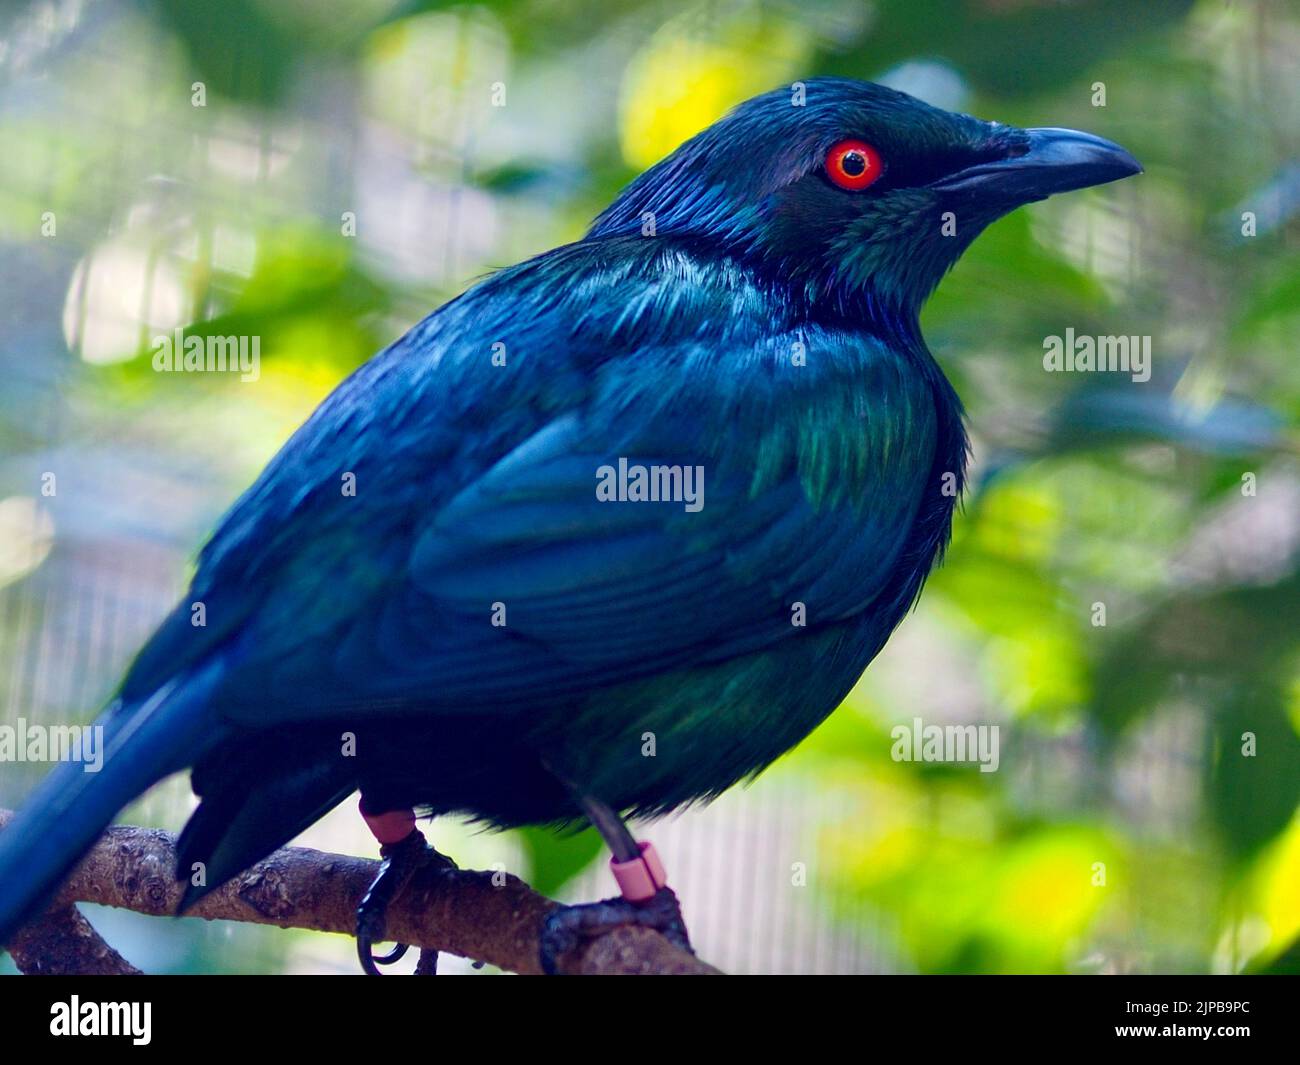 Impressionante Starling metallizzato con occhi rossi vivaci e piumaggio iridescente. Foto Stock